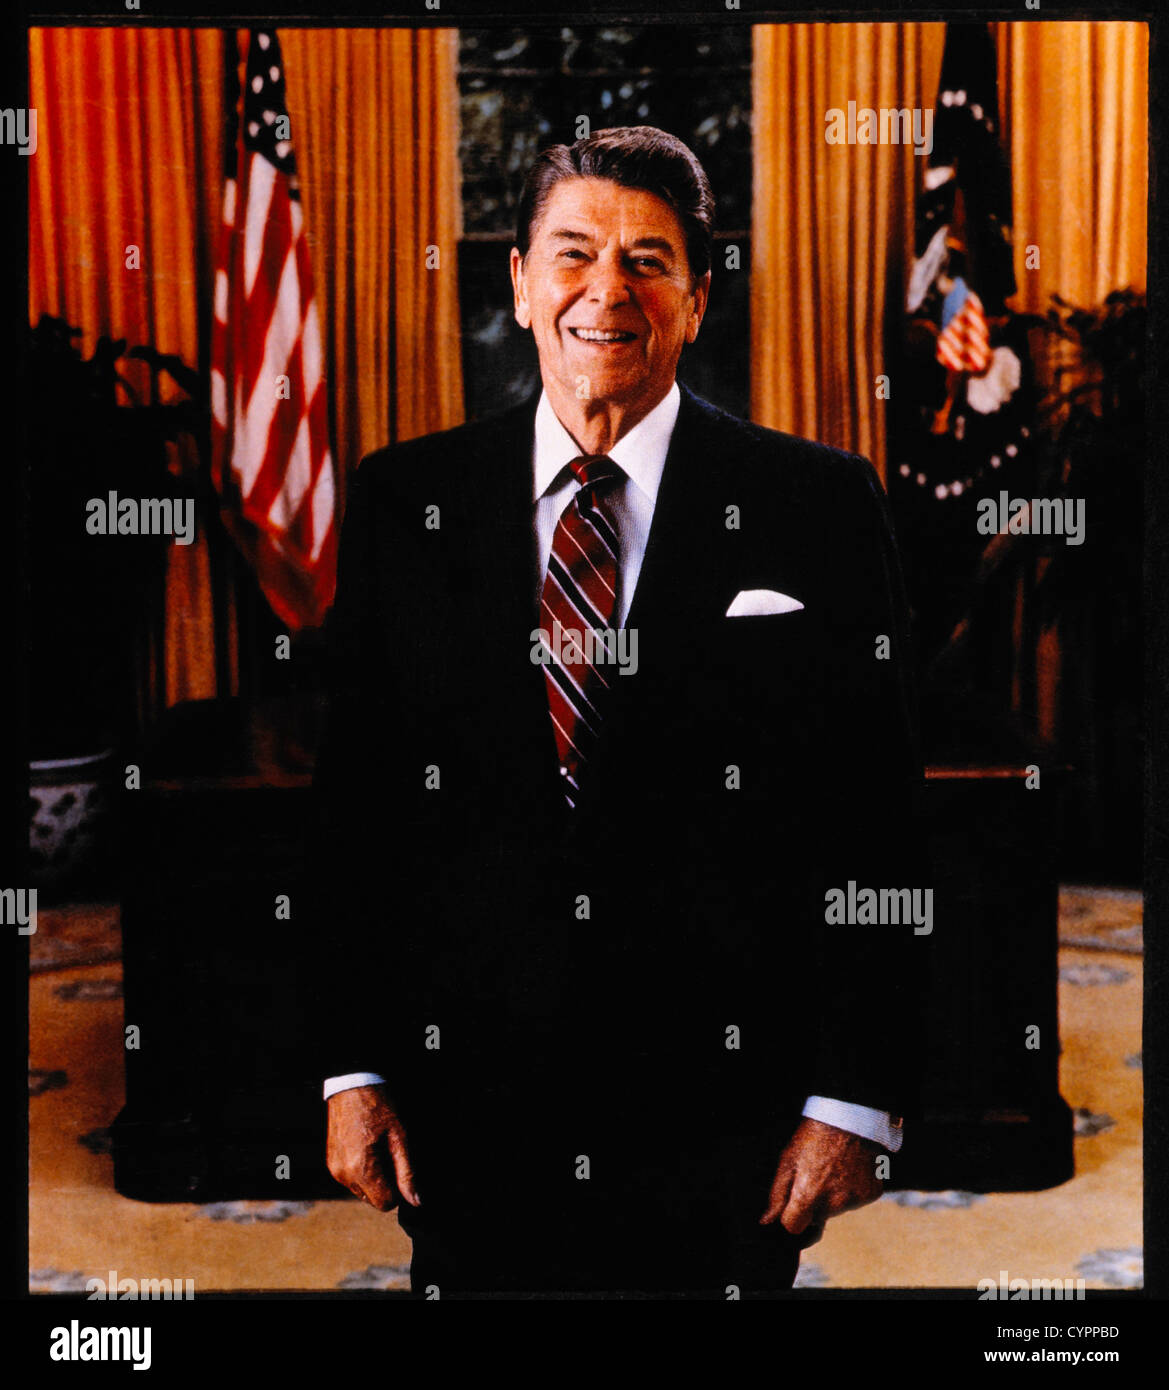 Ronald Reagan (1911-2004), 40e président des États-Unis, Portrait, 1981 Banque D'Images